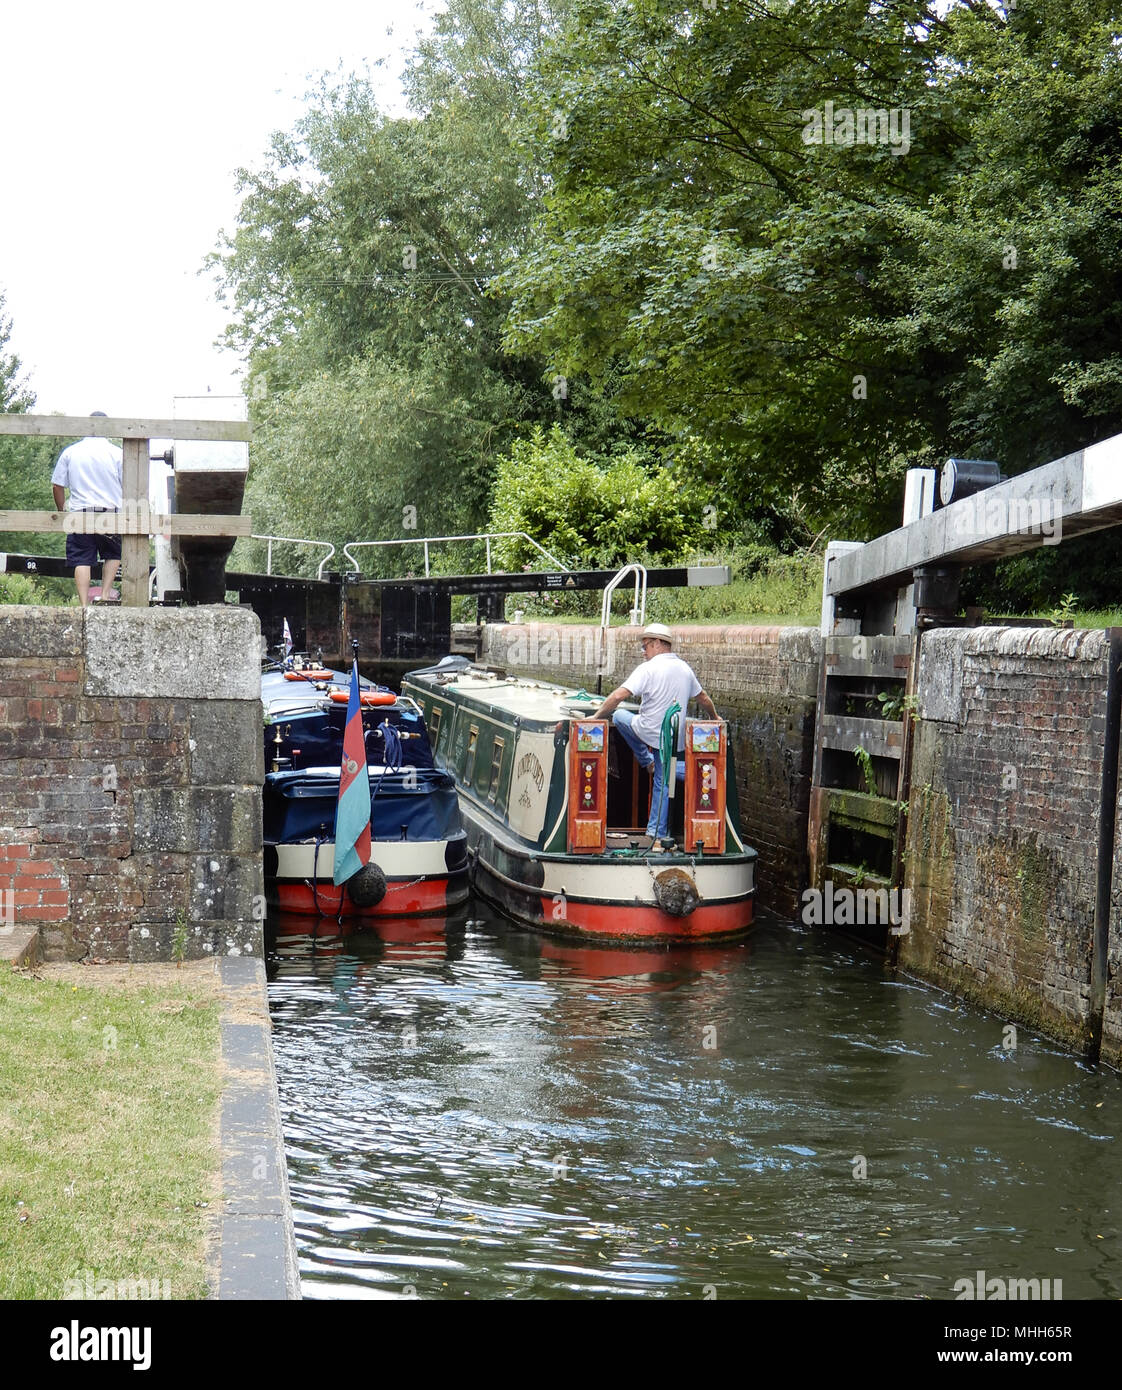 Sulhampstead, Royaume-Uni - 09 juillet 2017 : Deux narrowboats entrant Tyle Mill verrou sur la rivière Kennett à Sulhampstead près de Reading Banque D'Images